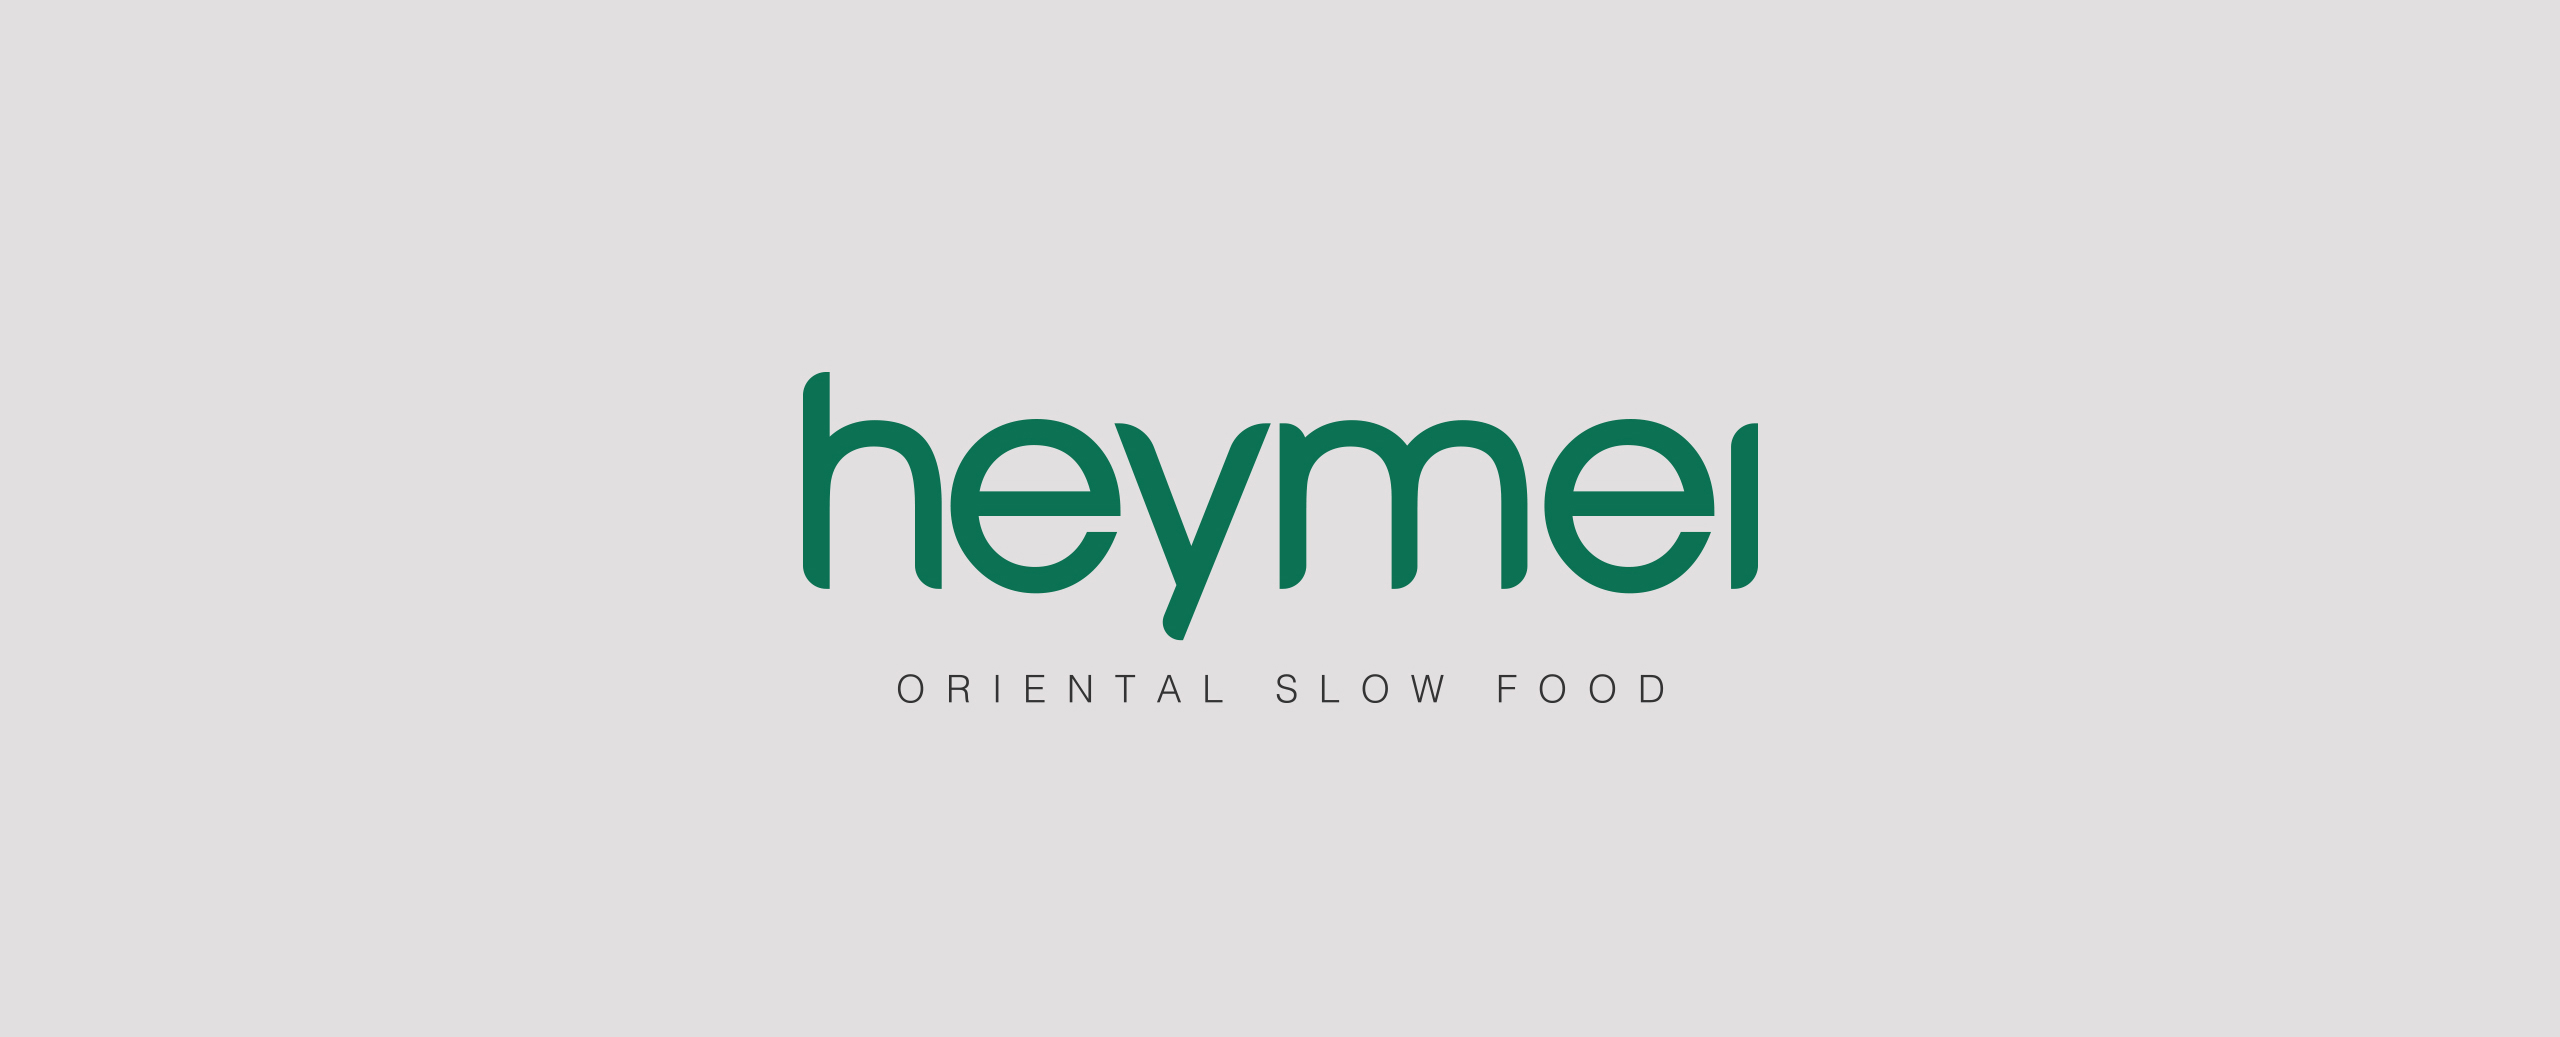 Heymei Oriental Slow Food